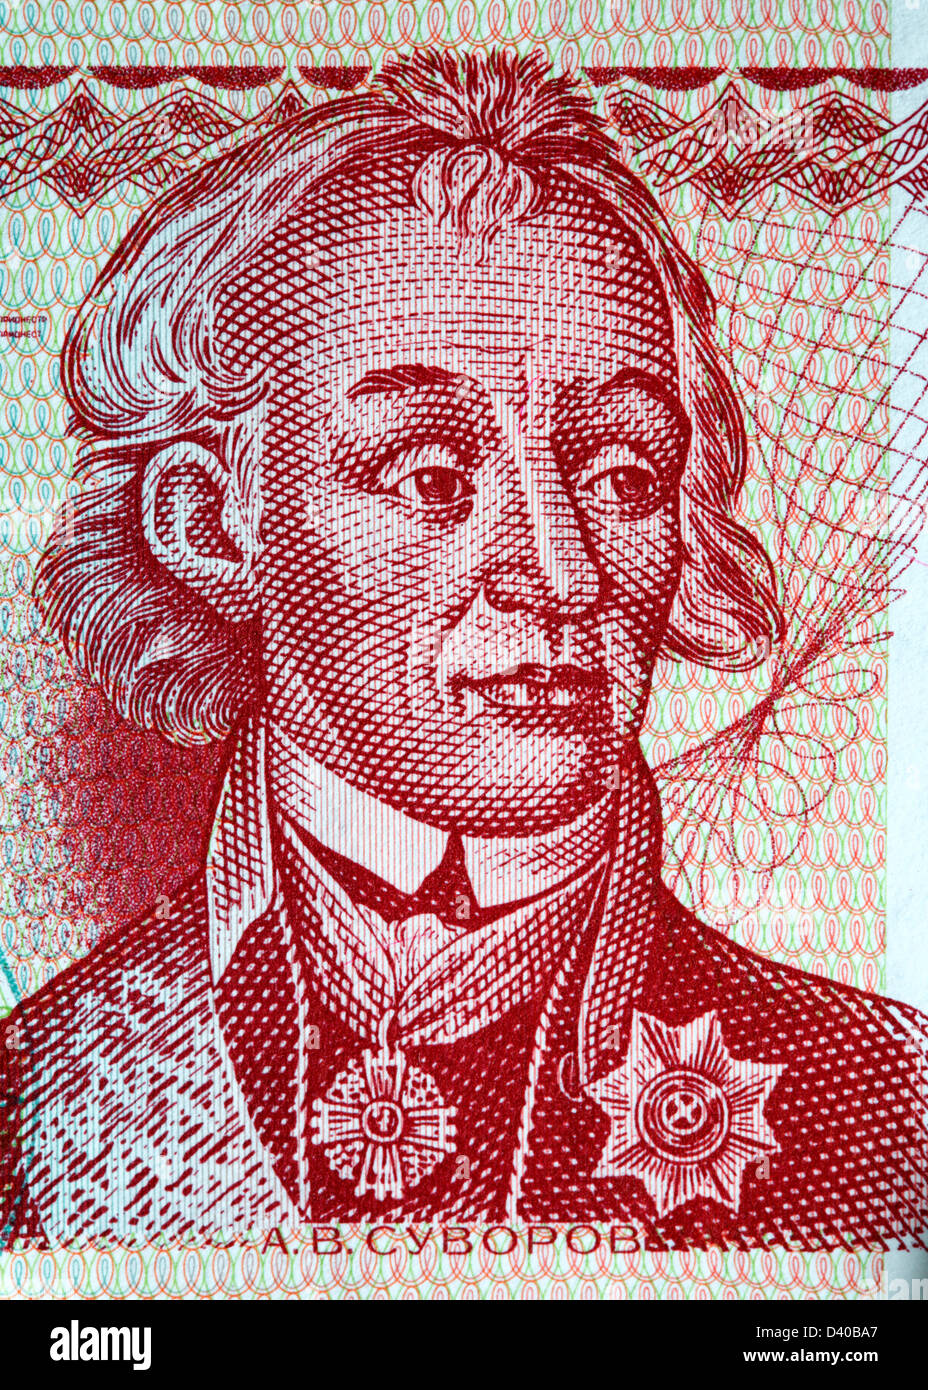 Porträt des russischen Generals Alexander Suvorov von 10 Rubel-Banknote, Transnistrien, Republik Moldau, 1994 Stockfoto